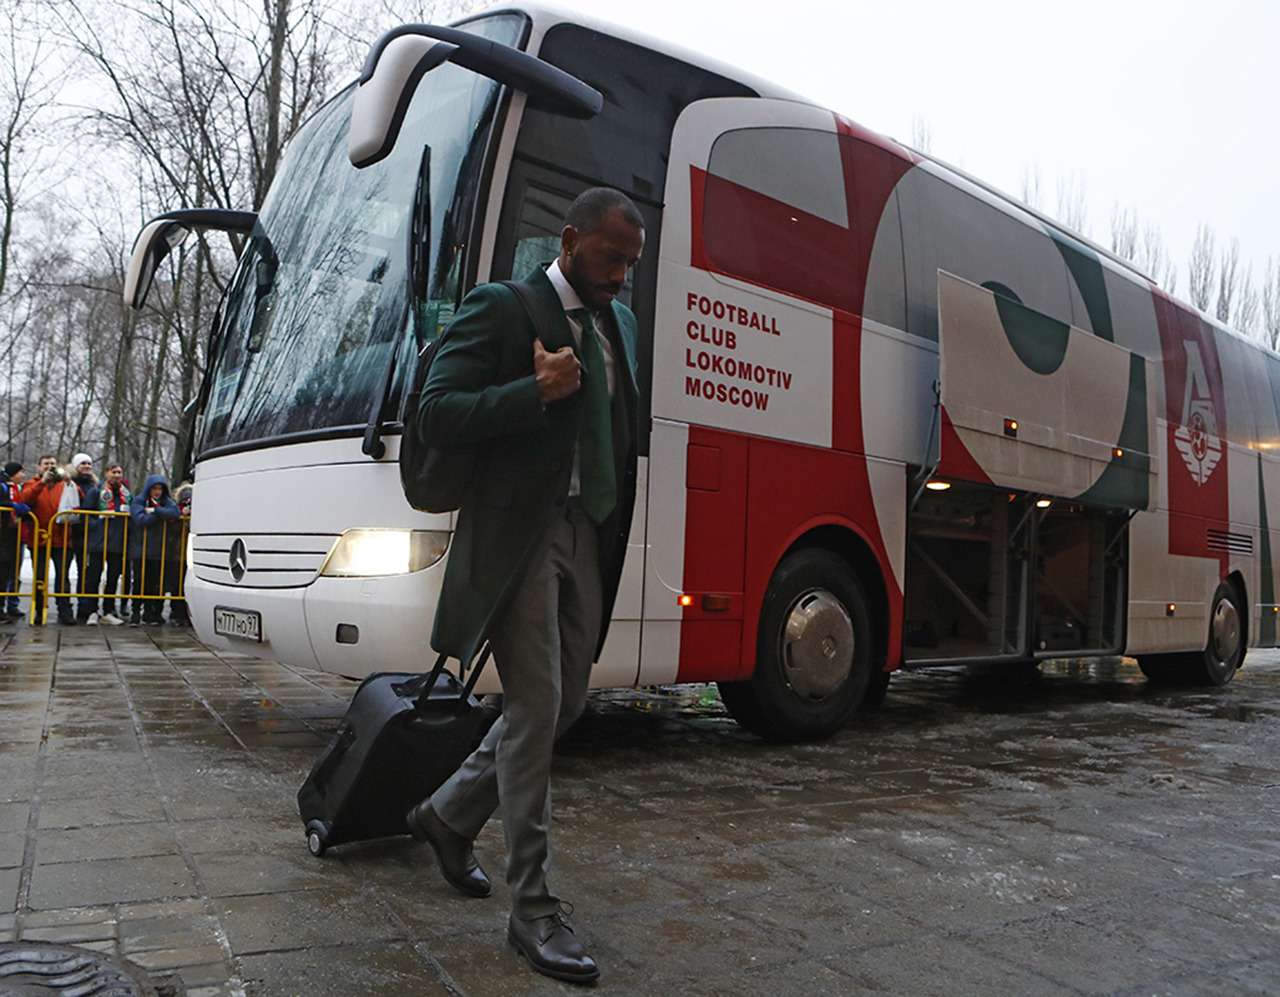 Mercedes, Setra, Volgabus... — на каких автобусах ездят наши футболисты — фото 929676